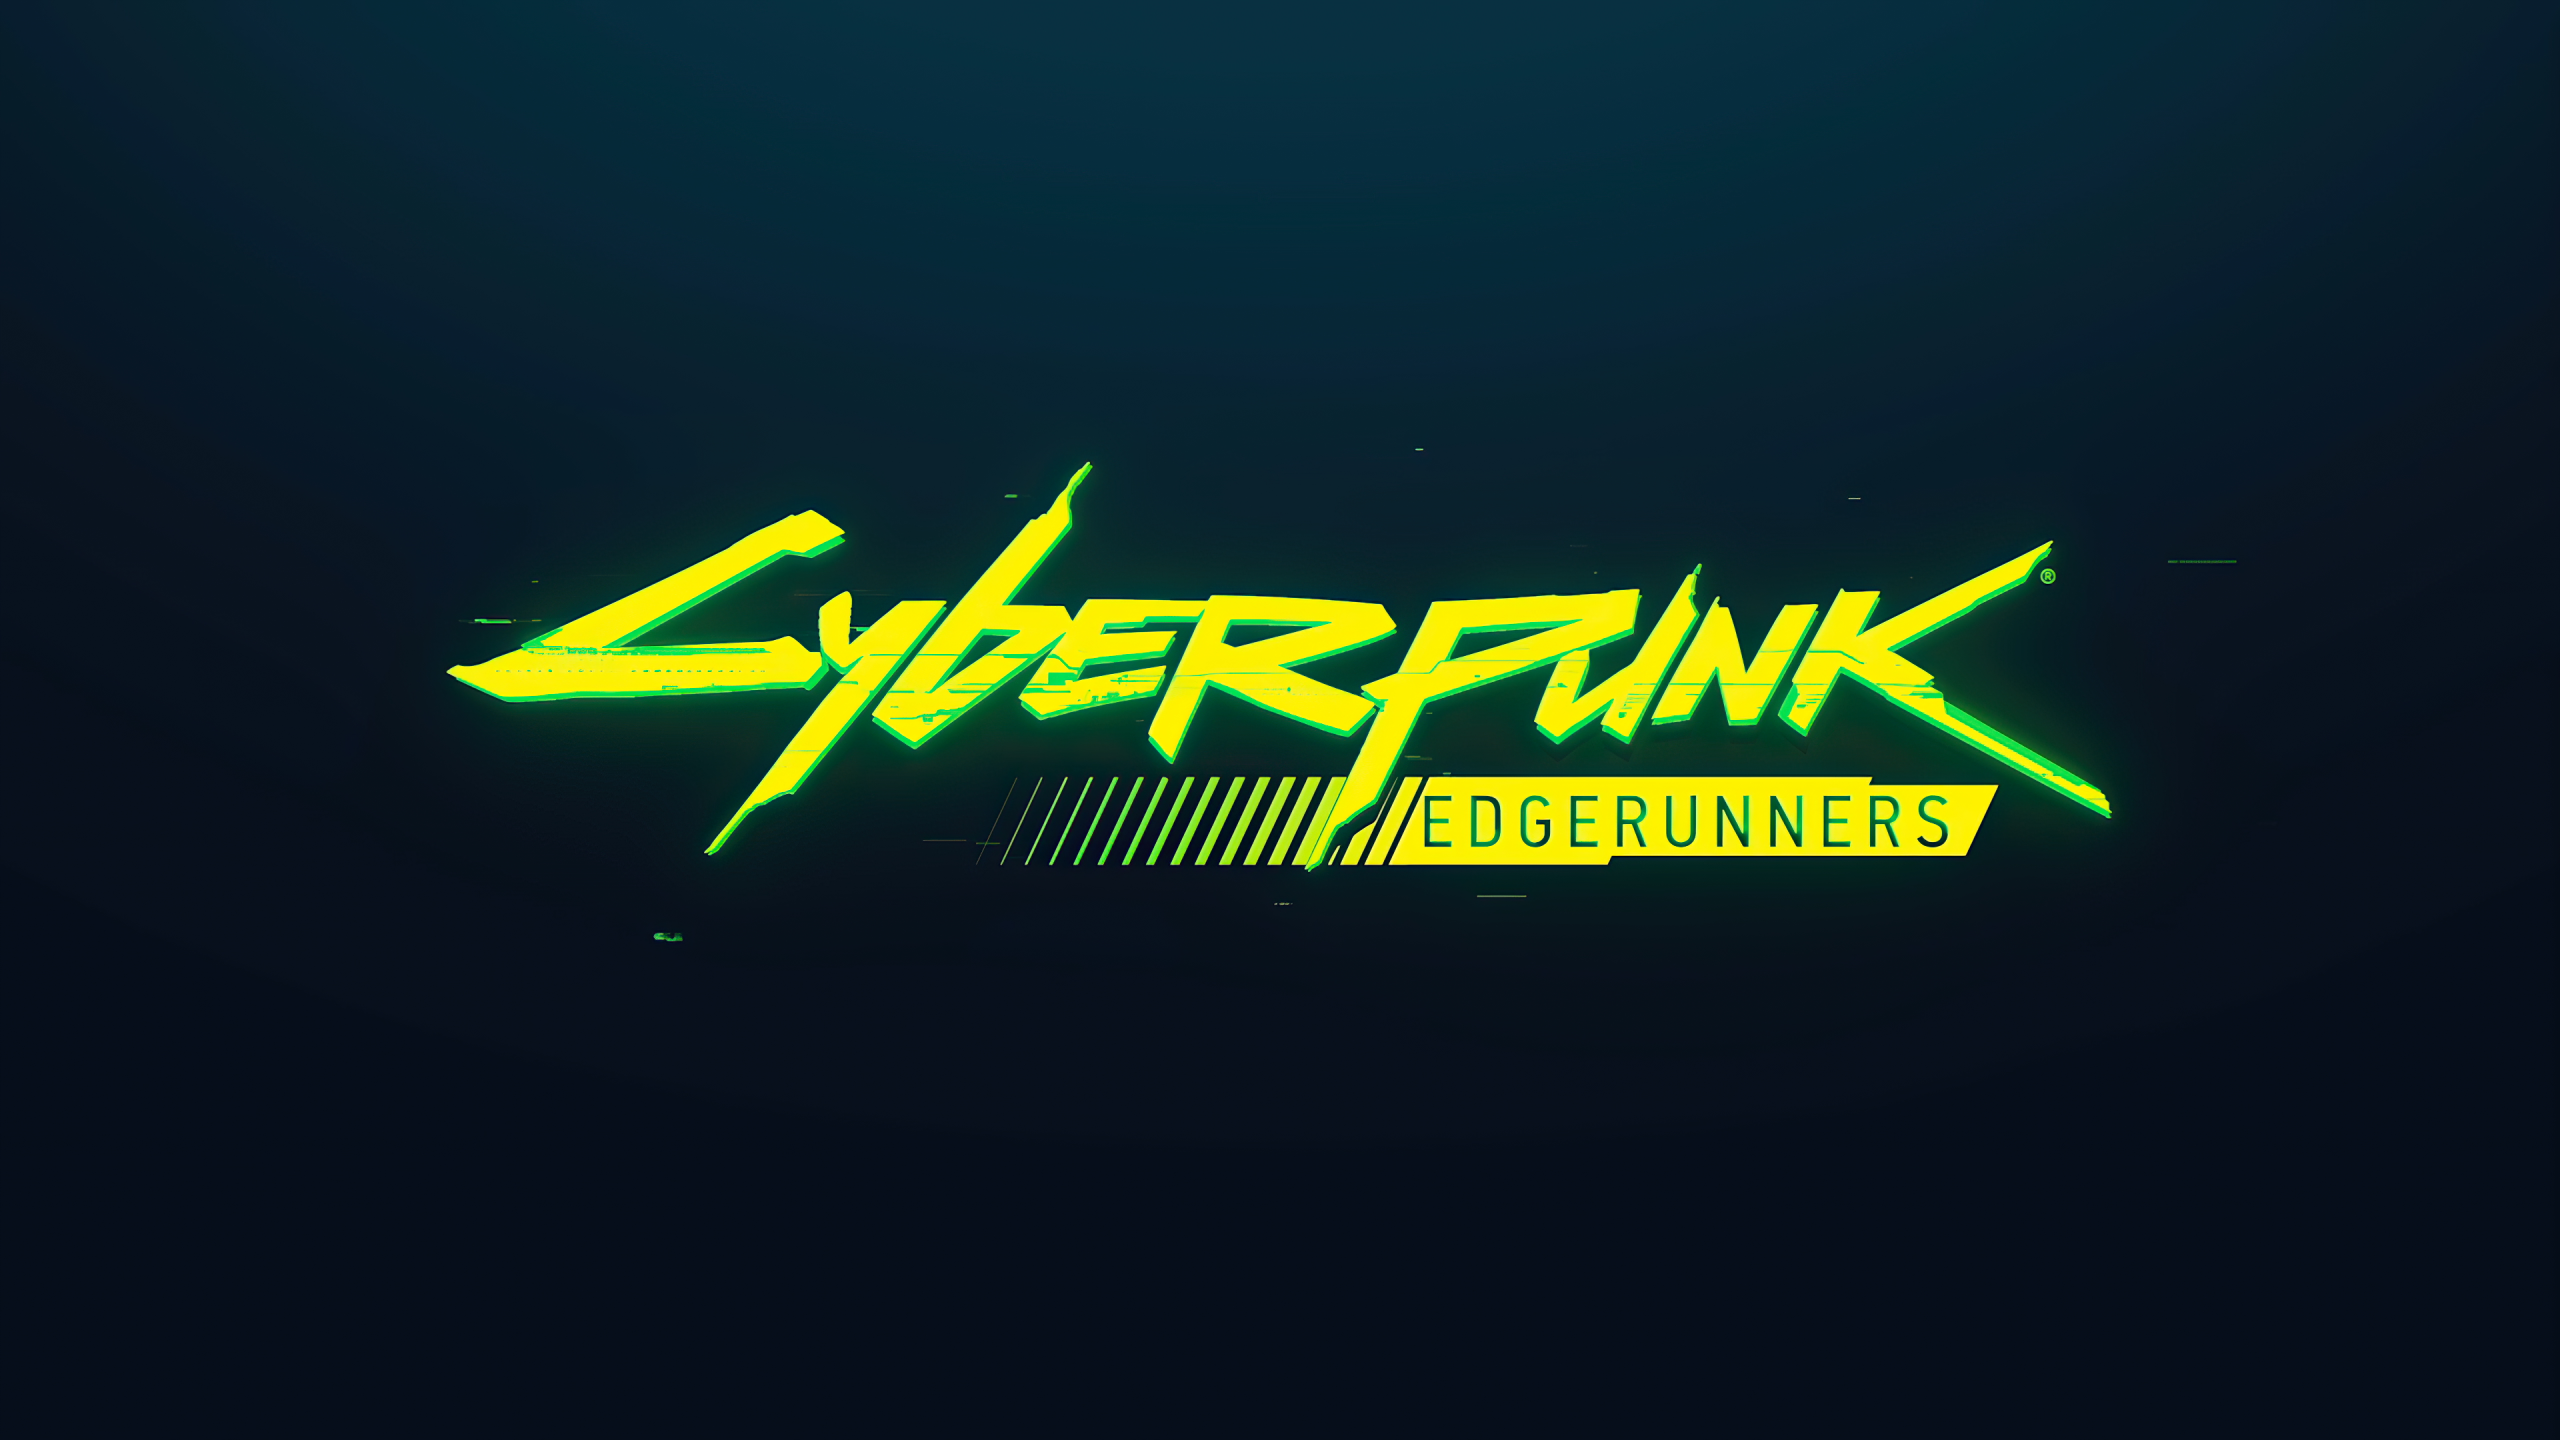 Cyberpunk logo animation фото 32